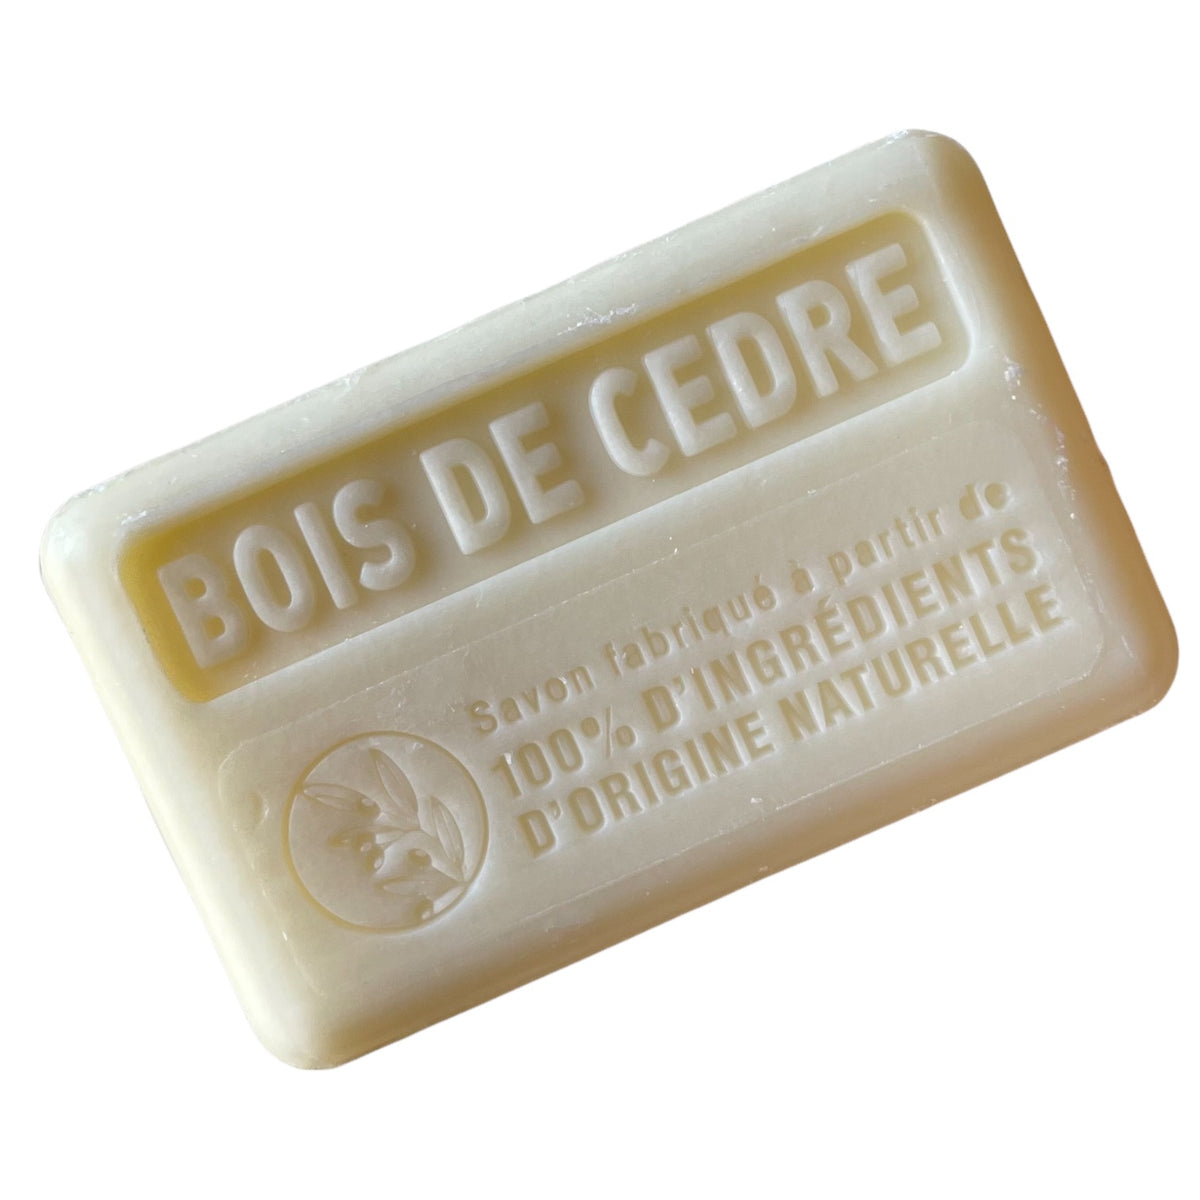 All natural soap bar gift set